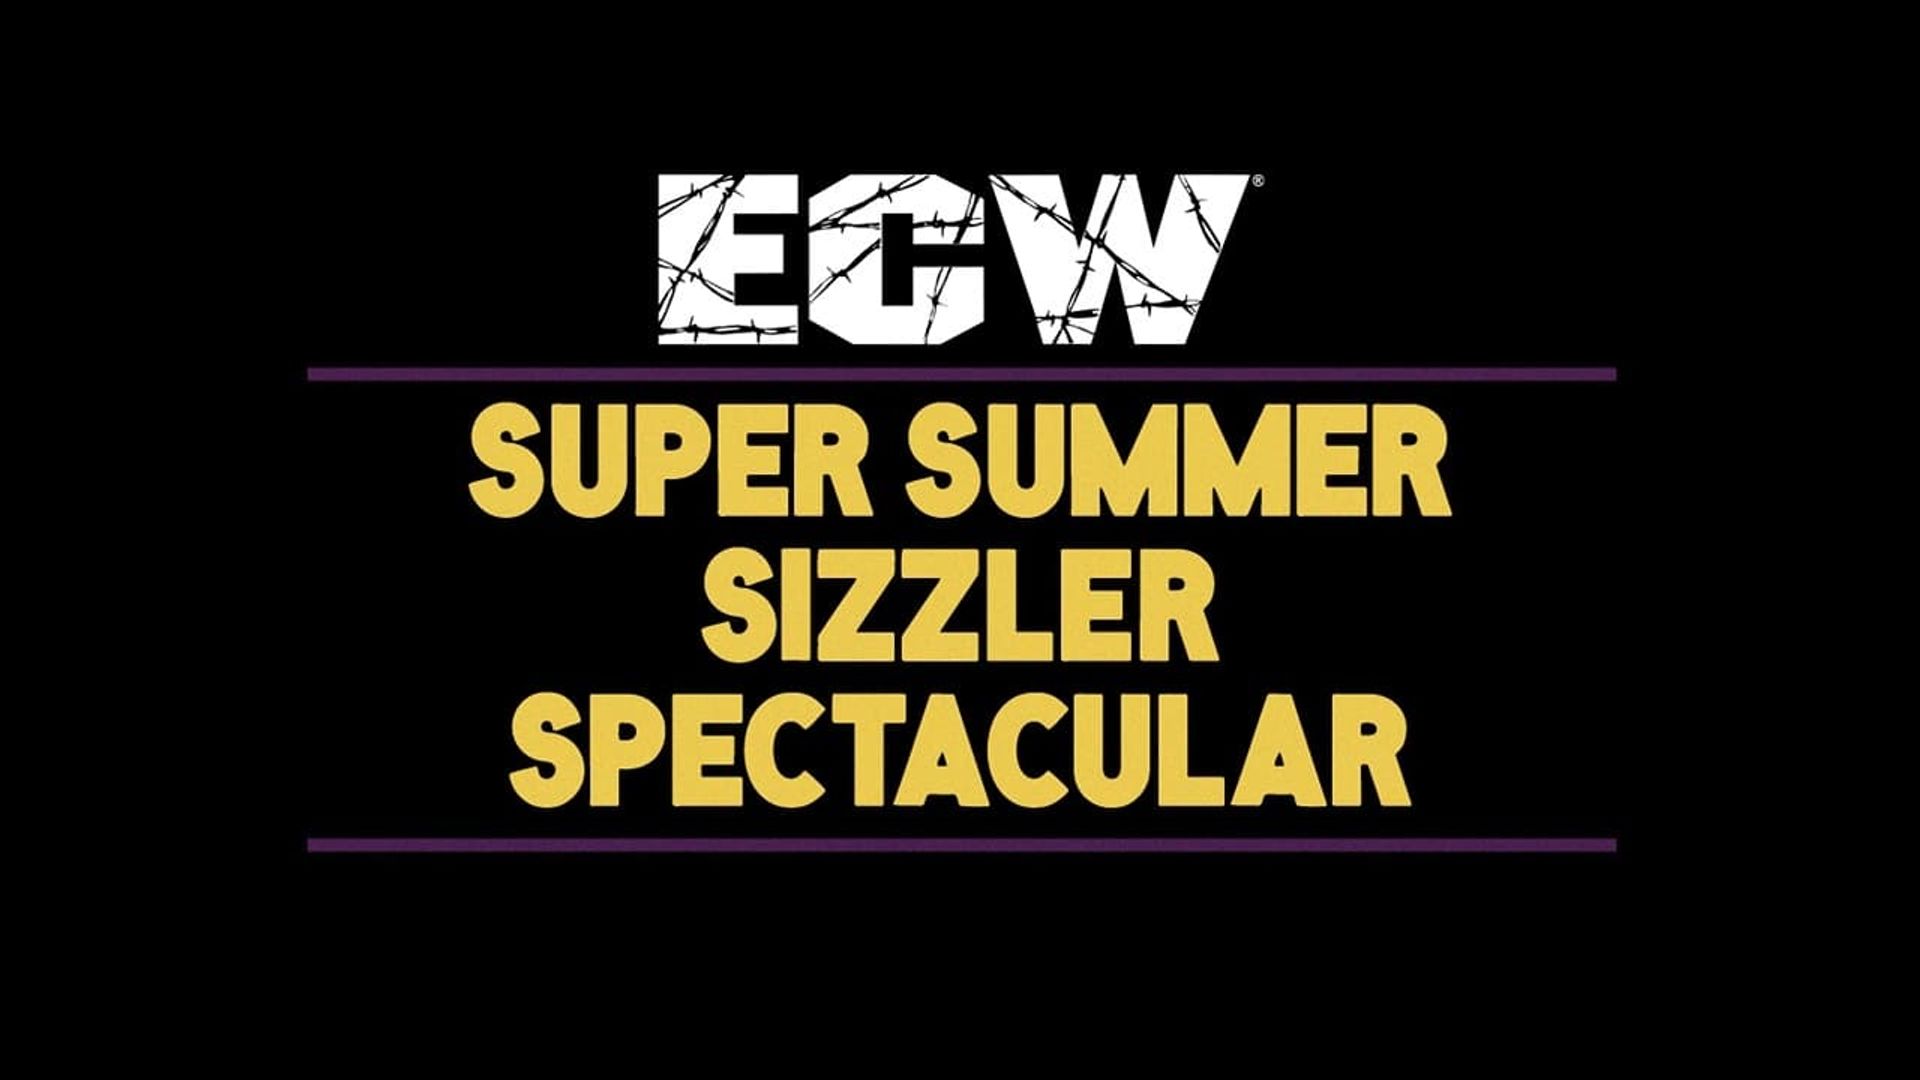 ECW Super Summer Sizzler Spectacular background